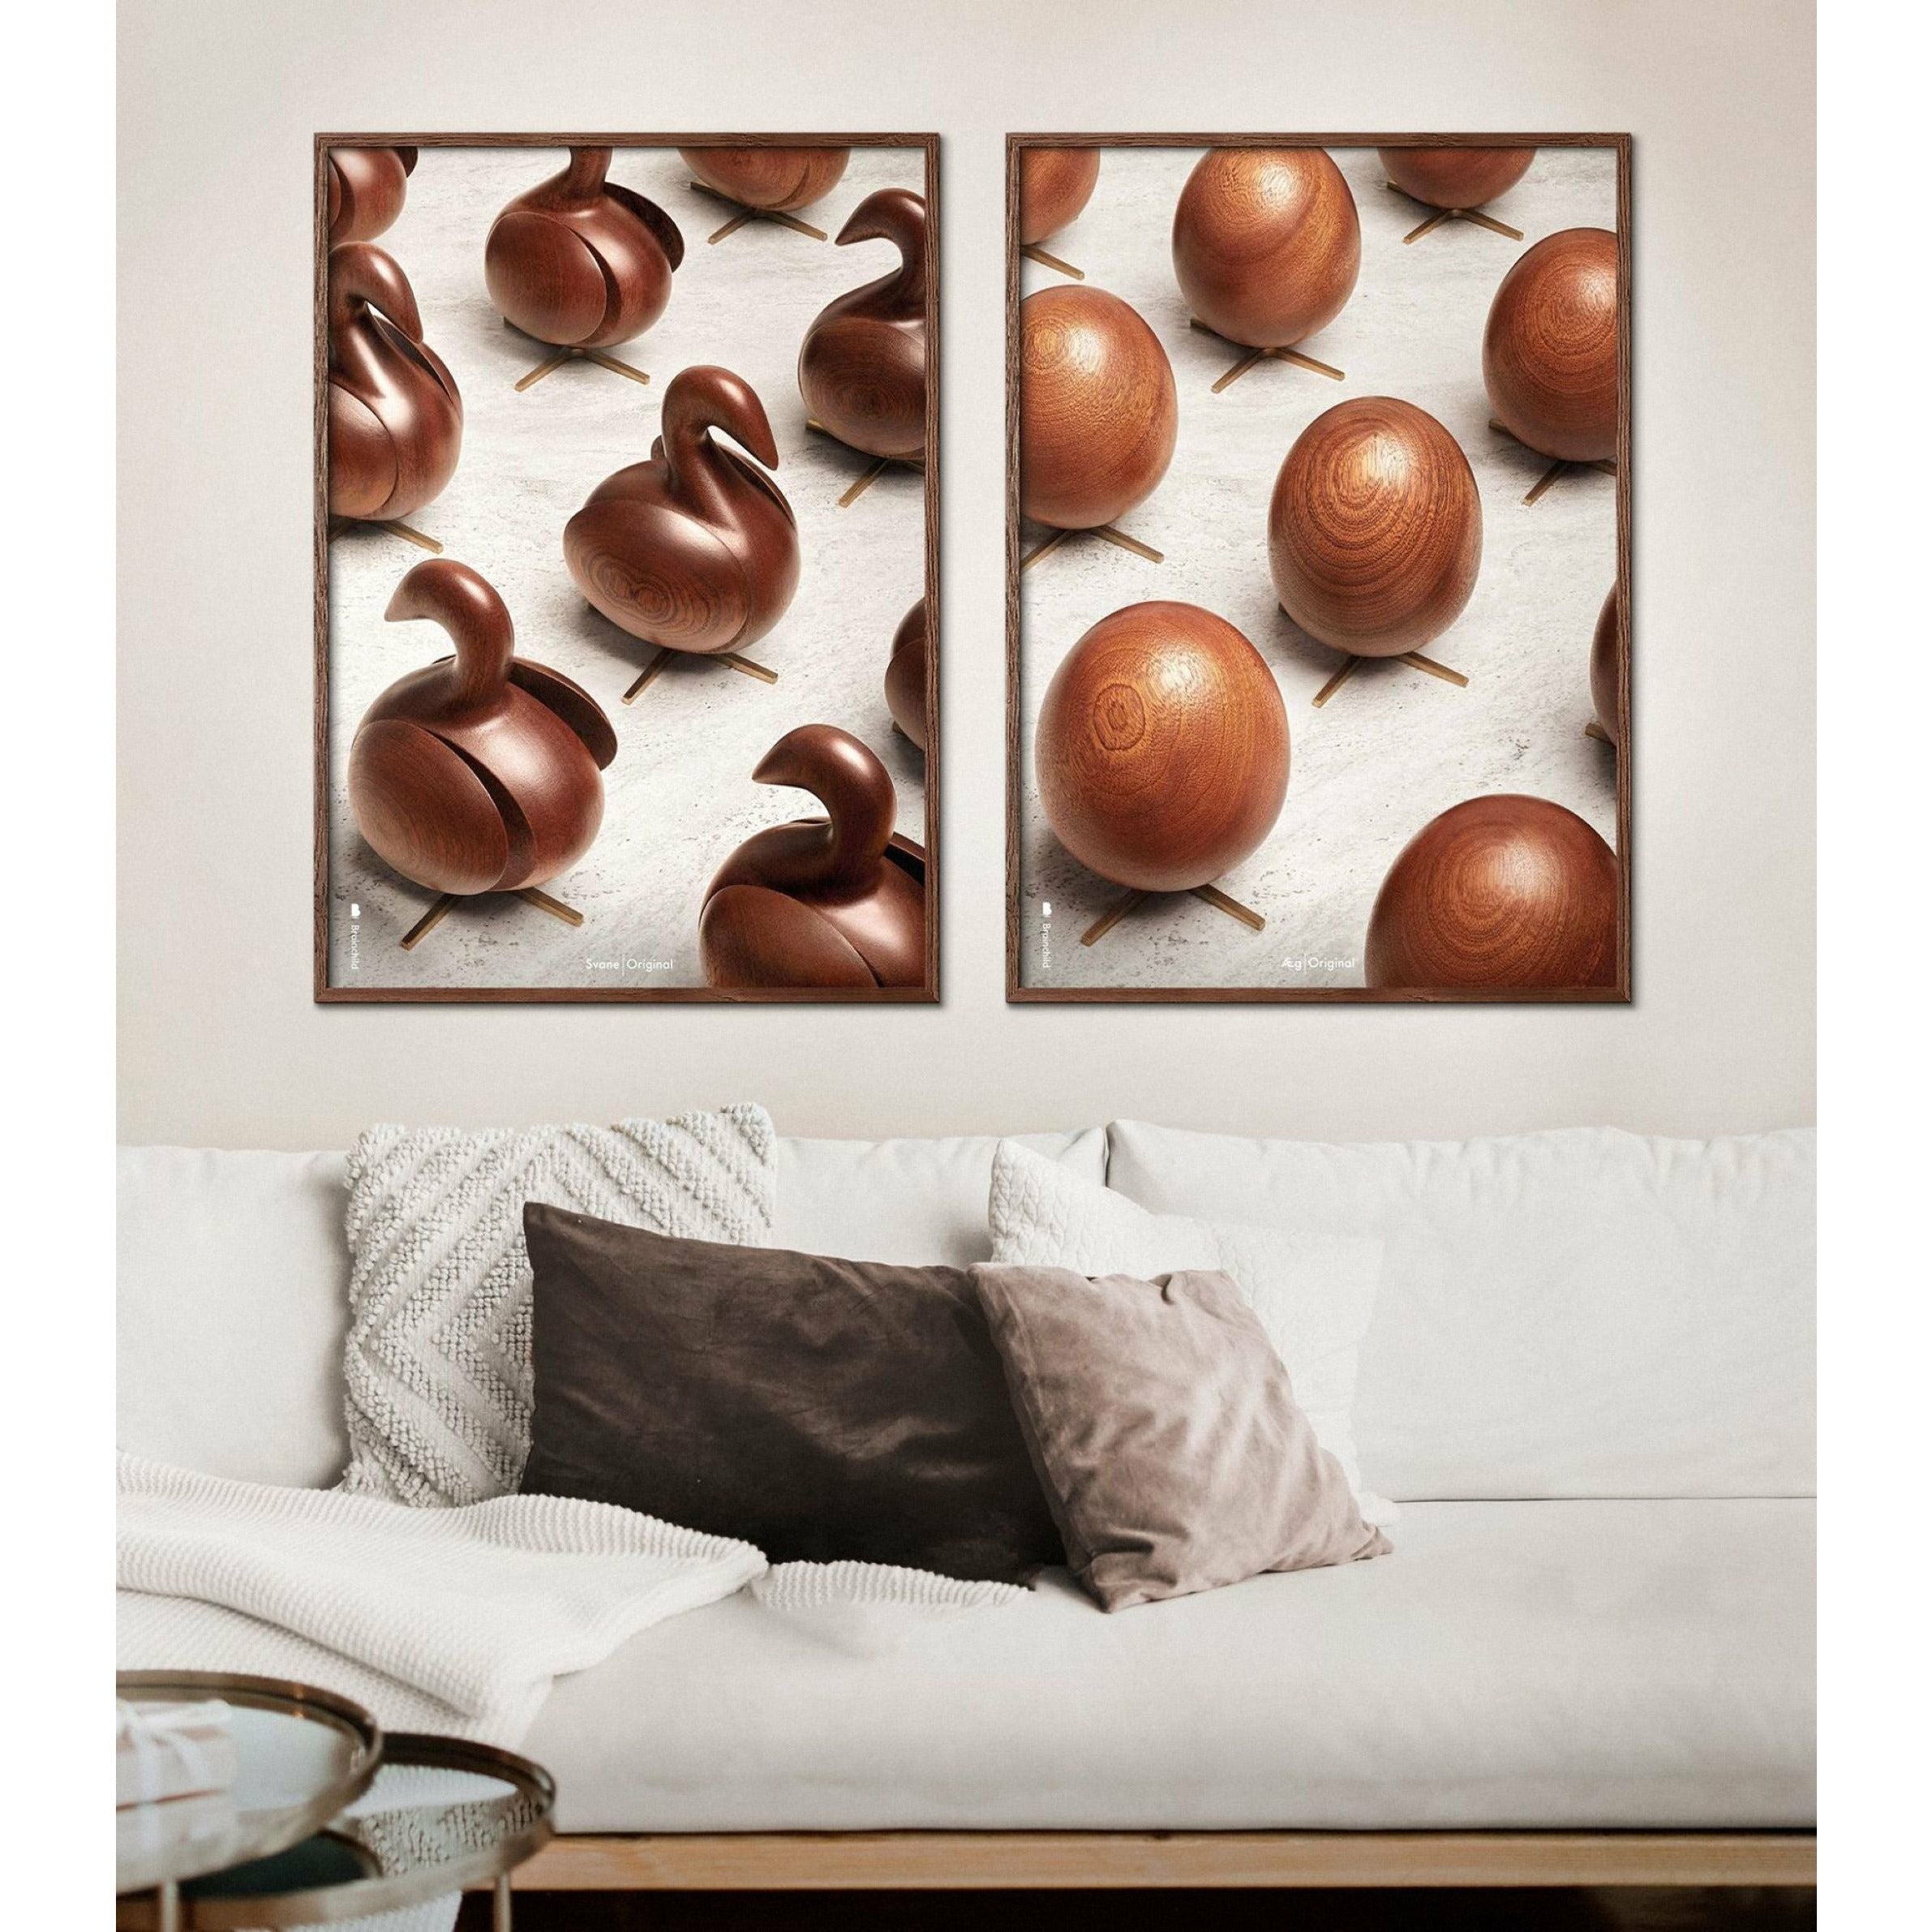 Poster per sfilata di uova di prima cosa, cornice color ottone, 70 x100 cm